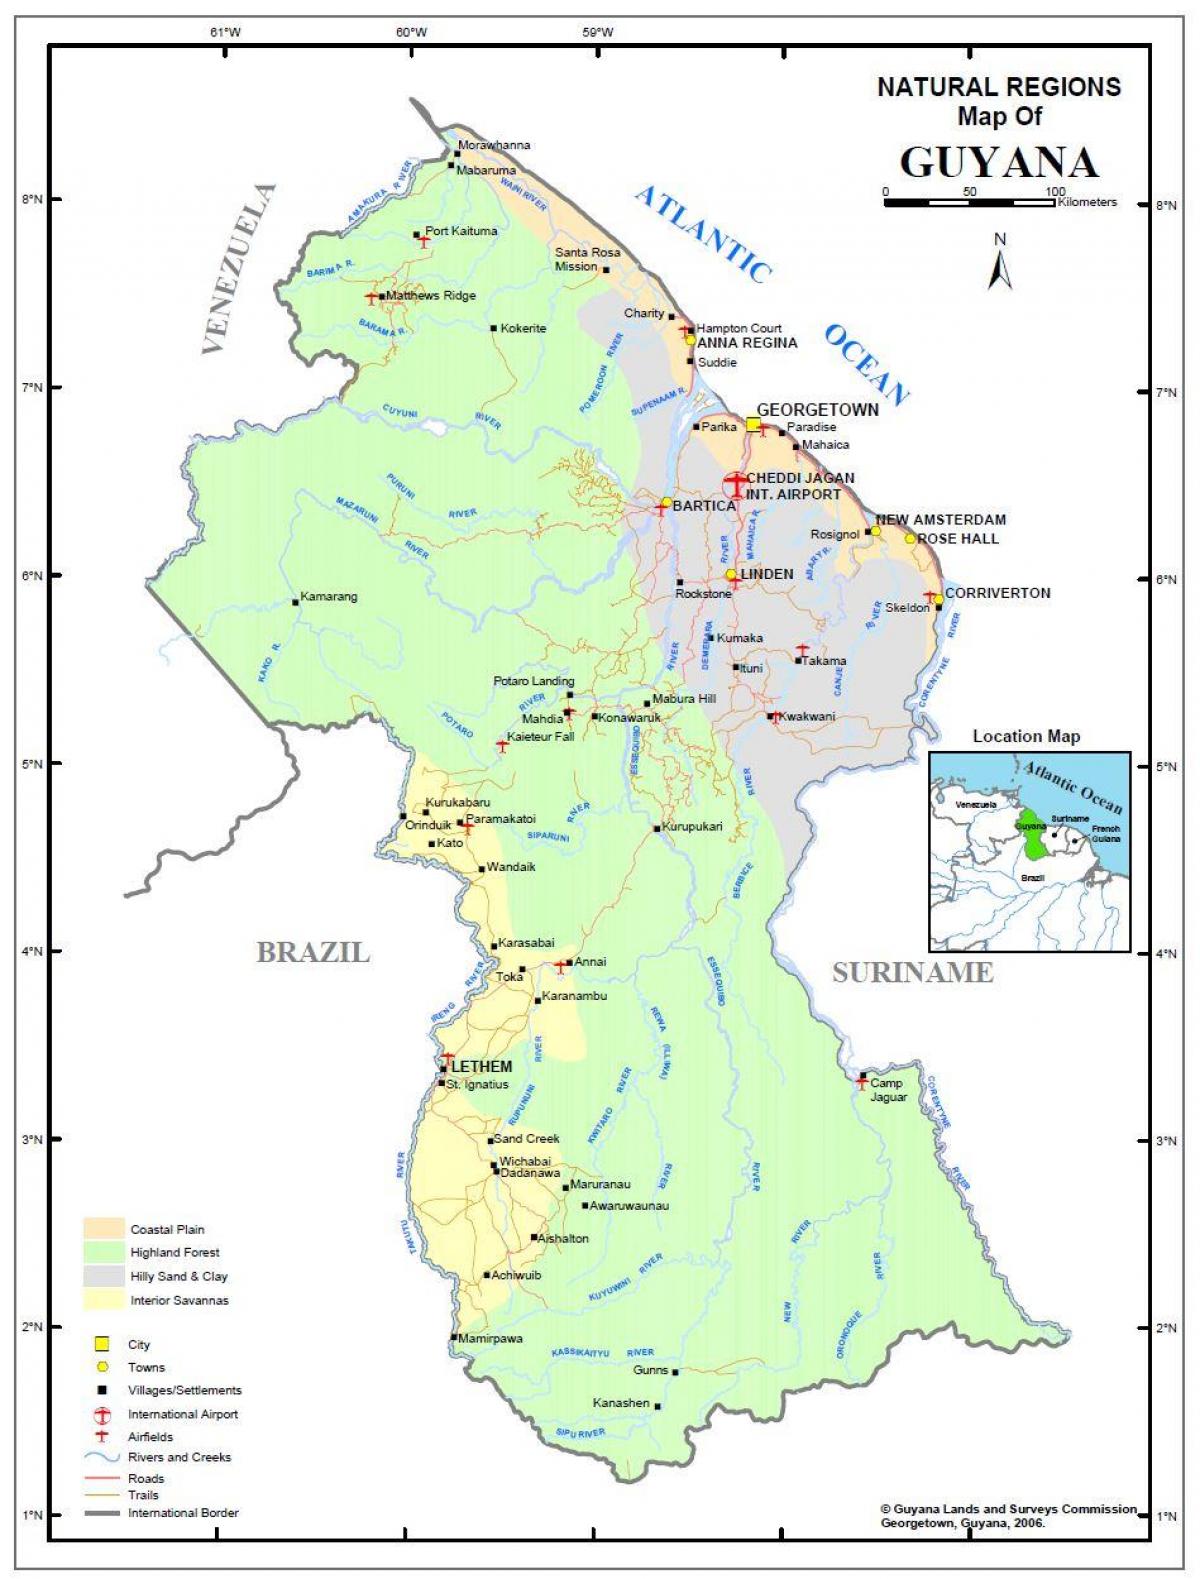 מפה של גיאנה מראה את 4 האזורים הטבעיים